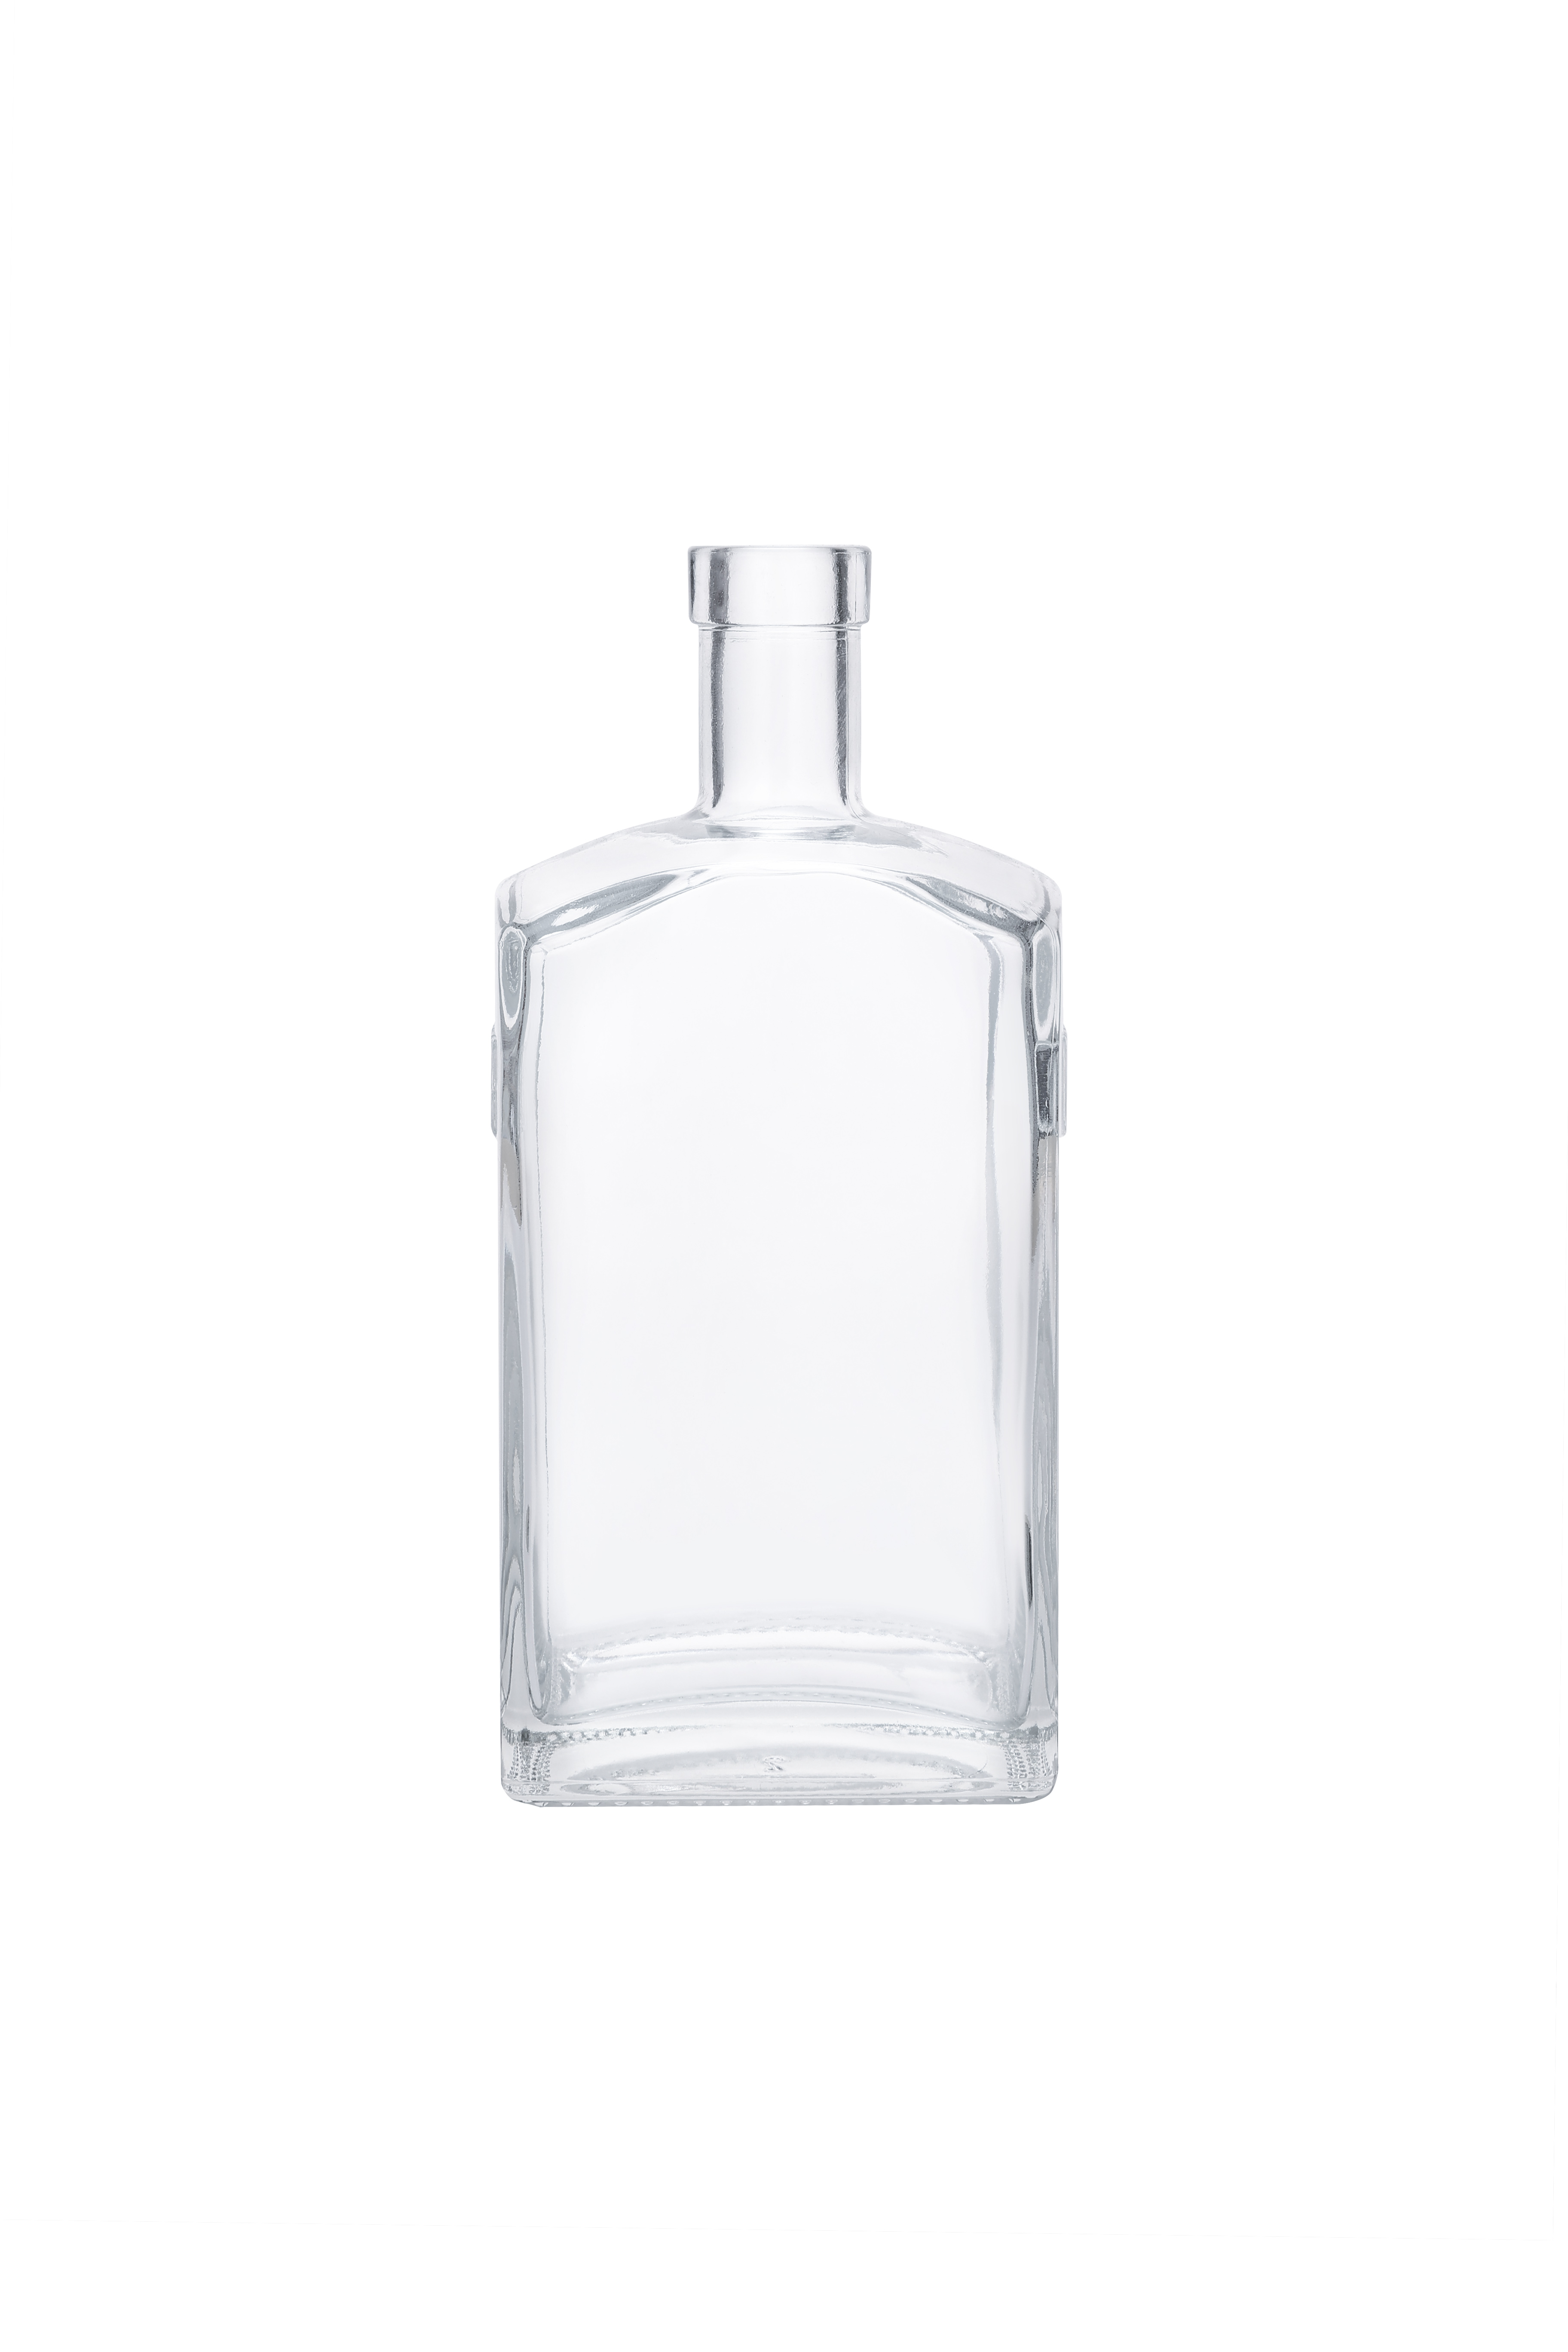  Vodka Glass Liquor Bottle 